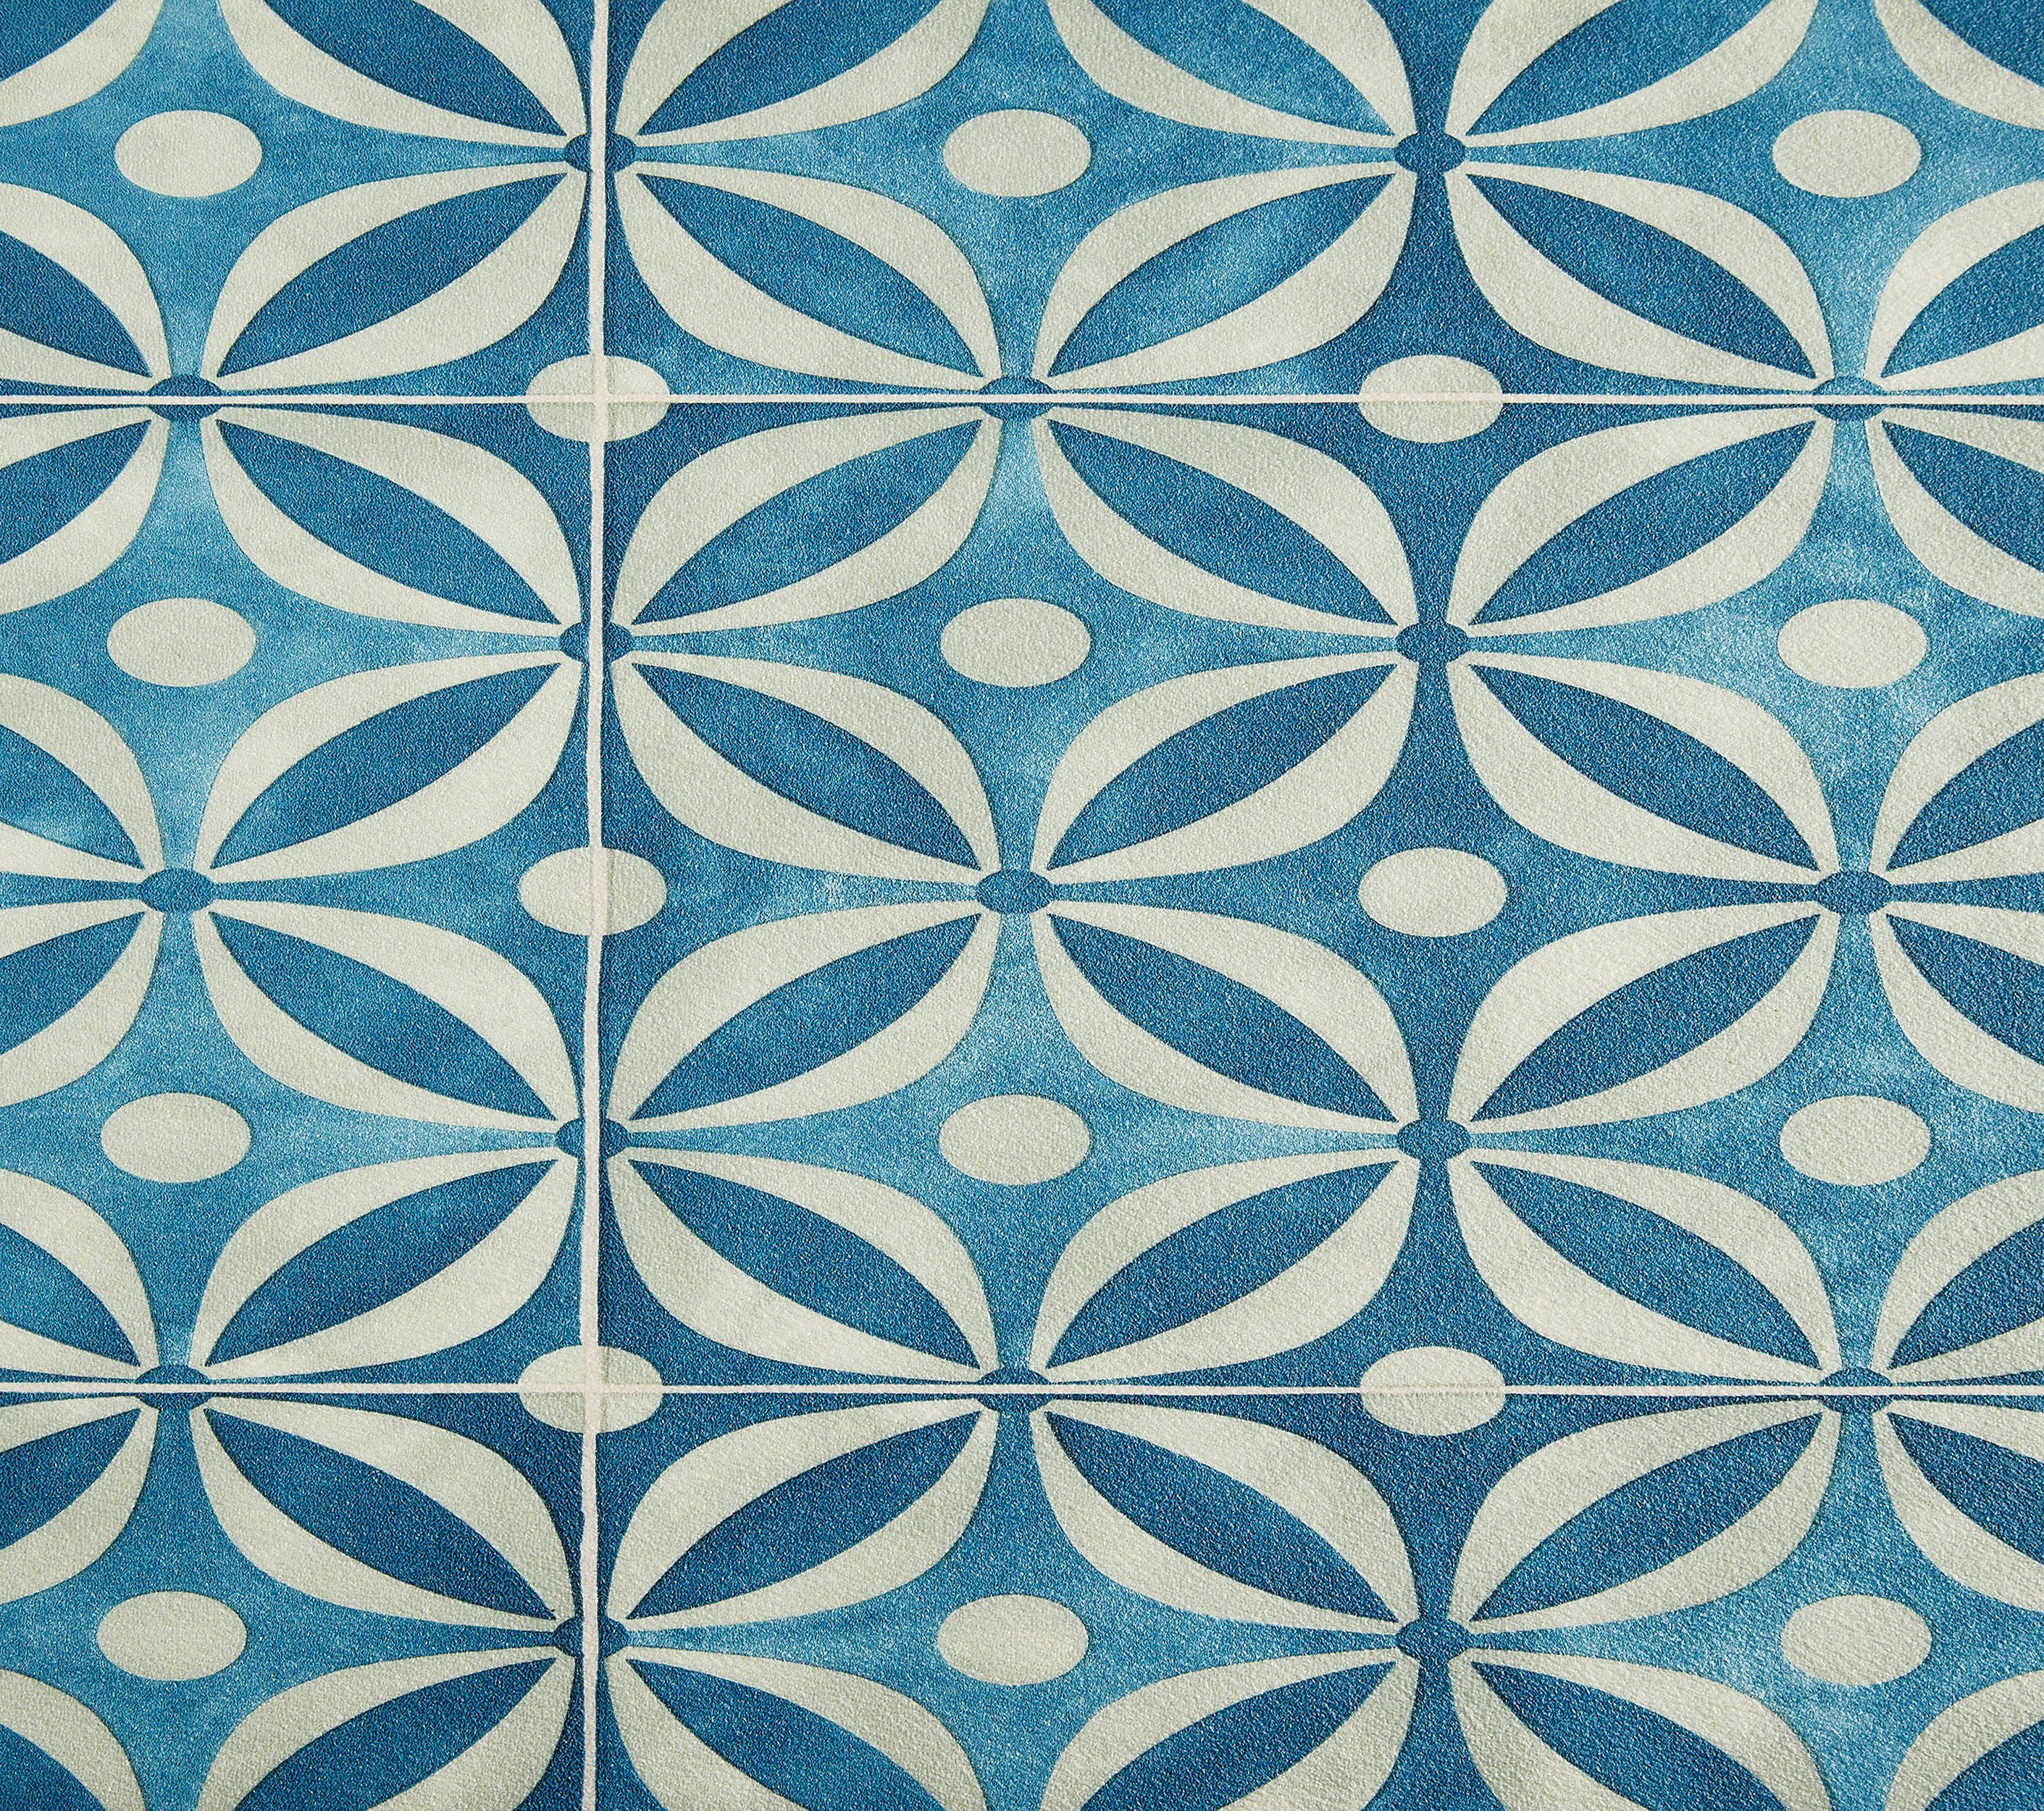 Andiamo Vinylboden Mosaik- und Granitoptik, PVC Bodenbelag Meterware Breite 200 cm oder 400 cm, Stärke 2,5 mm Fliesenoptik türkis-blau